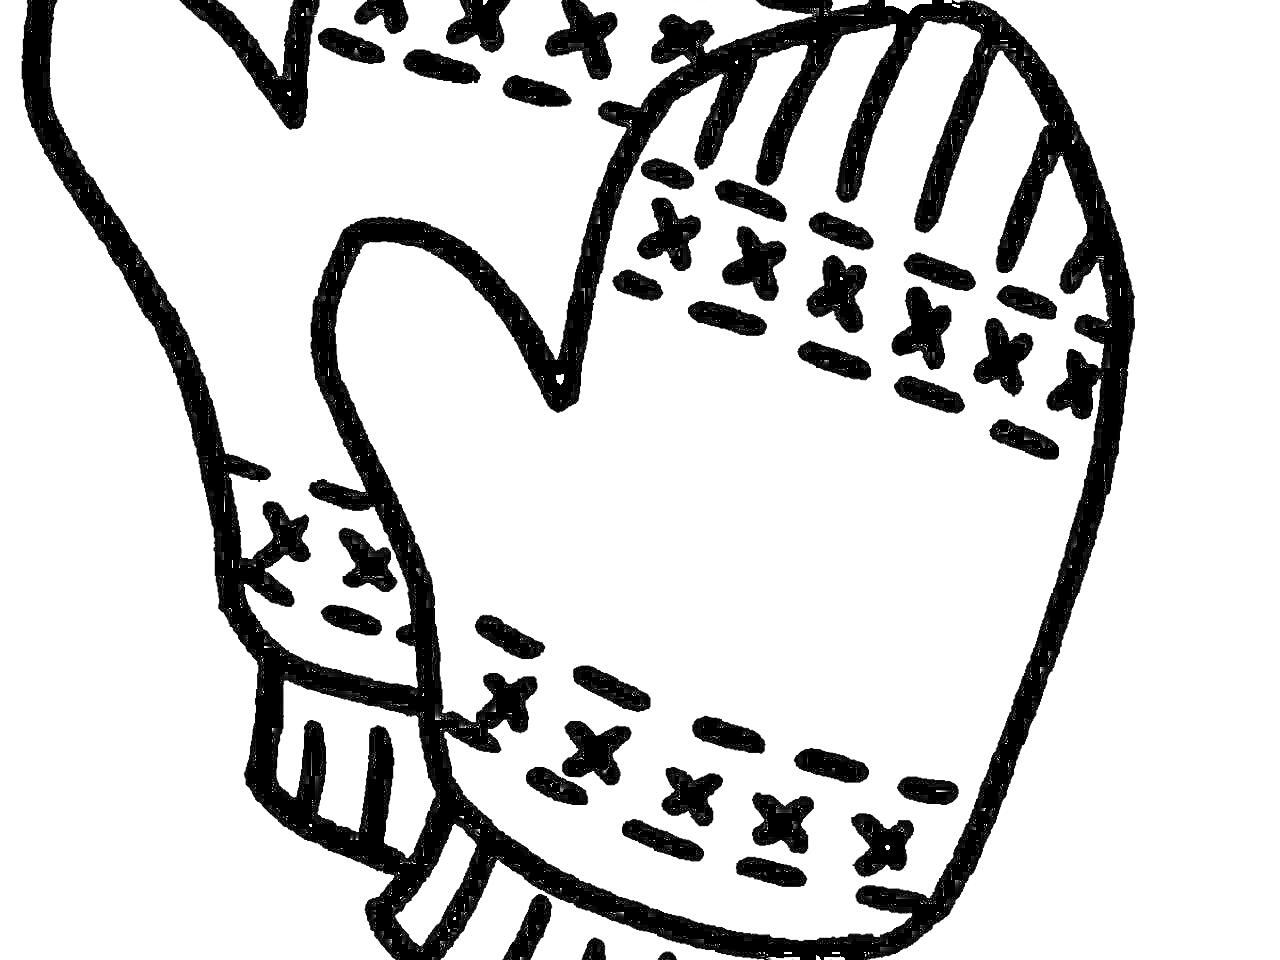 Раскраска Варежки с узорами (две варежки с рисунком крестиков и полосок)